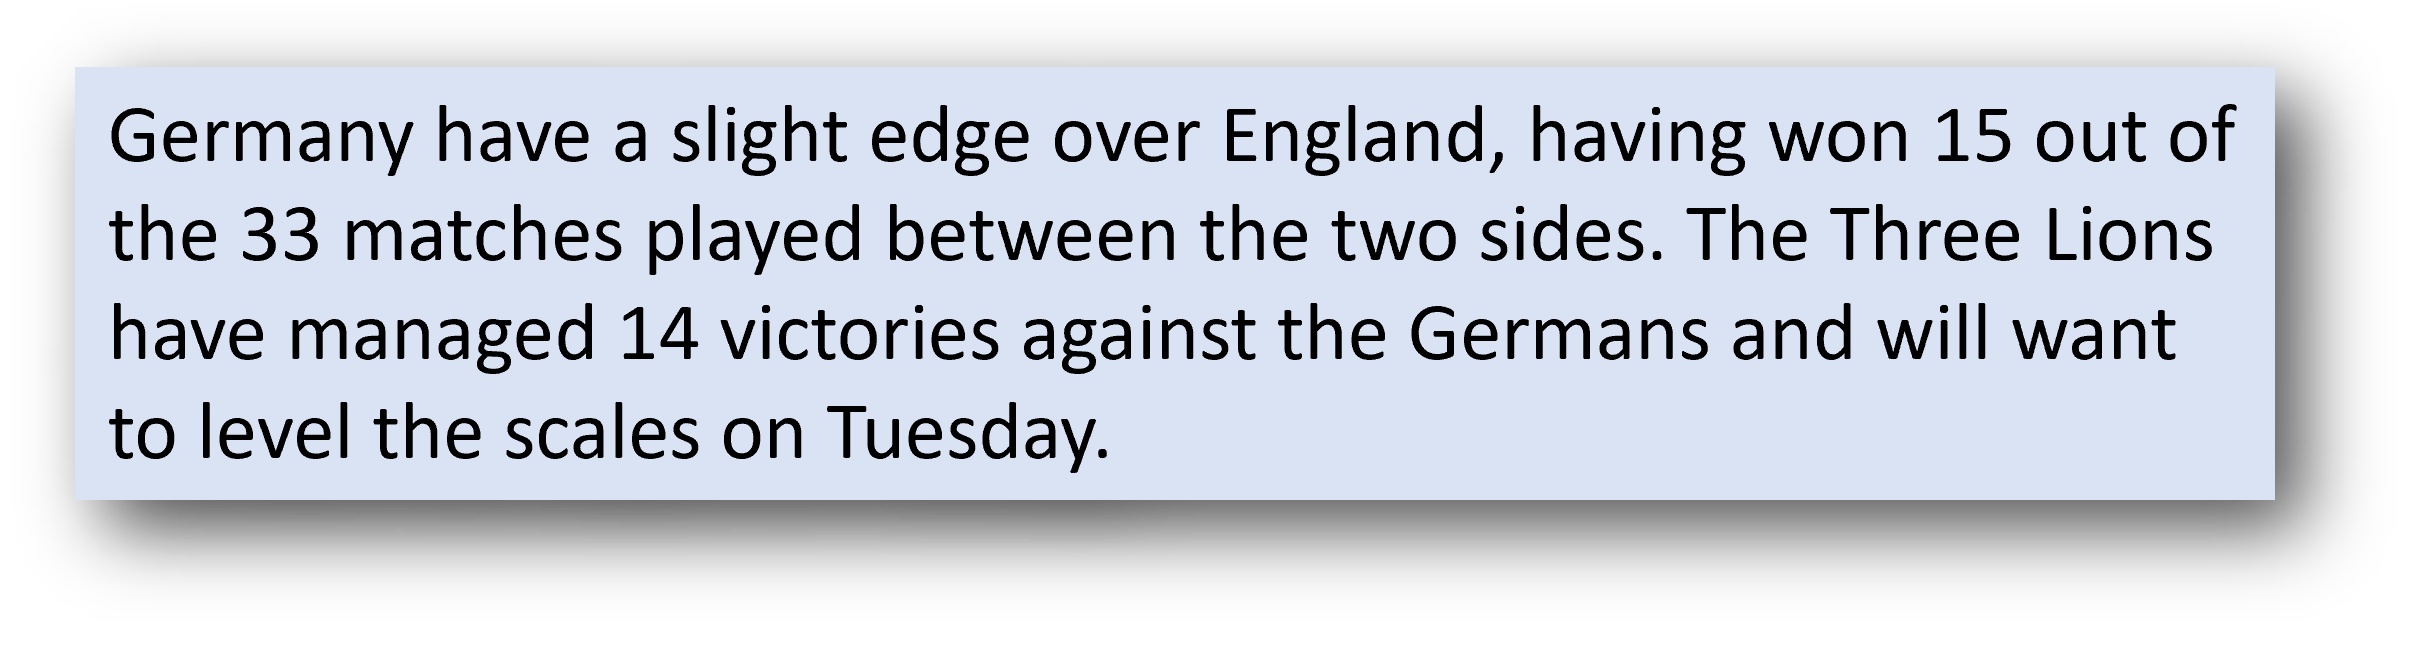 Germany vs England head to head